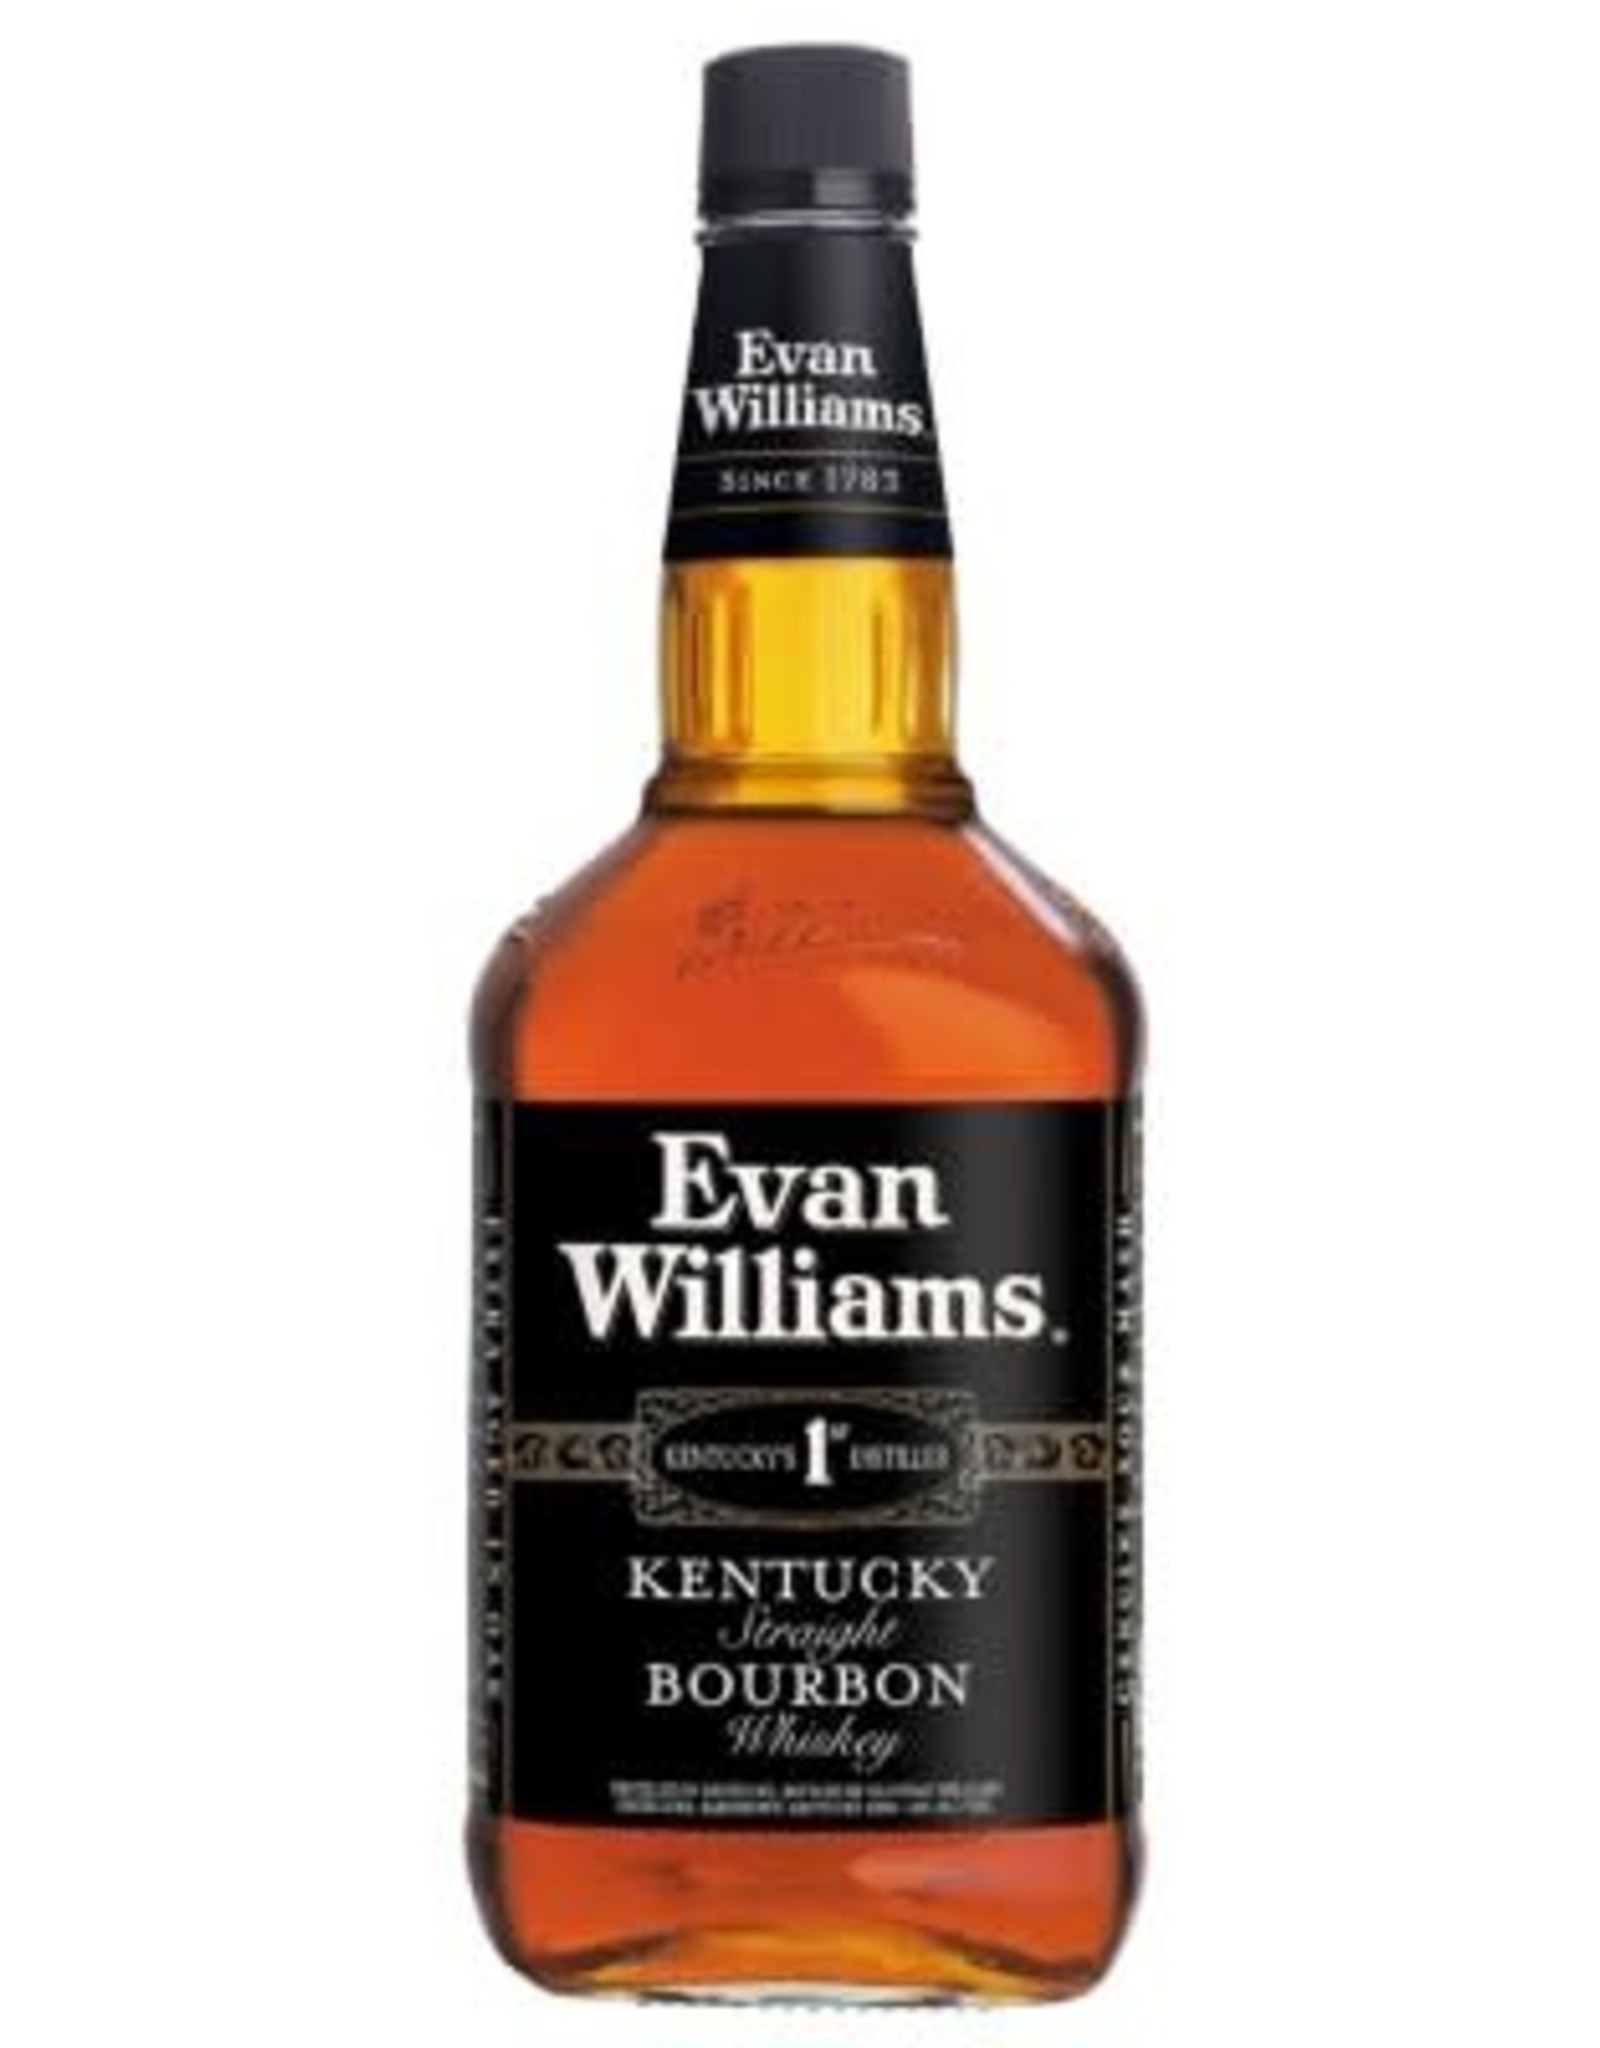 Evan Williams EVAN WILLIAMS - BLACK LABEL - BOURBON -  86 PR - 1.75 L